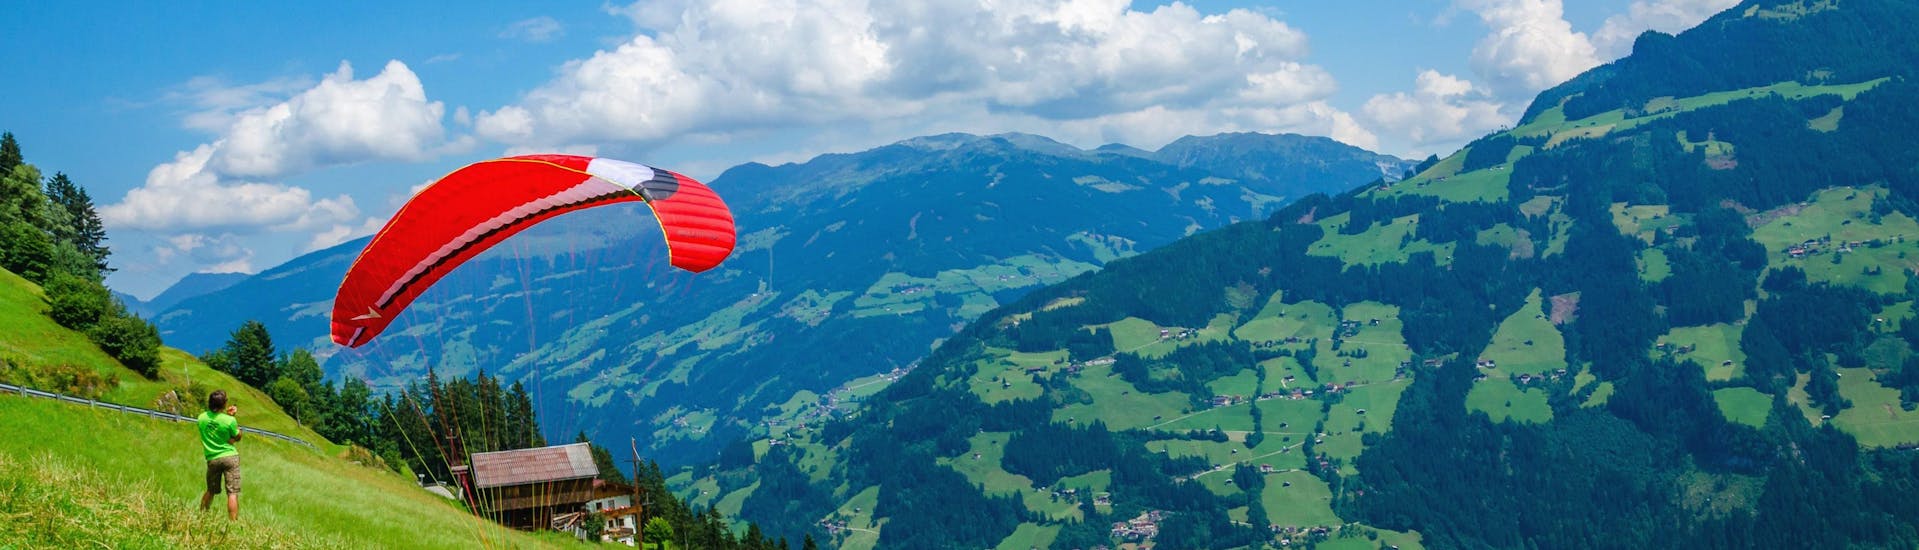 Wunderschöne Aussicht auf die Zillertaler Bergwelt, ein beliebtes Gebiet für Paraglider.